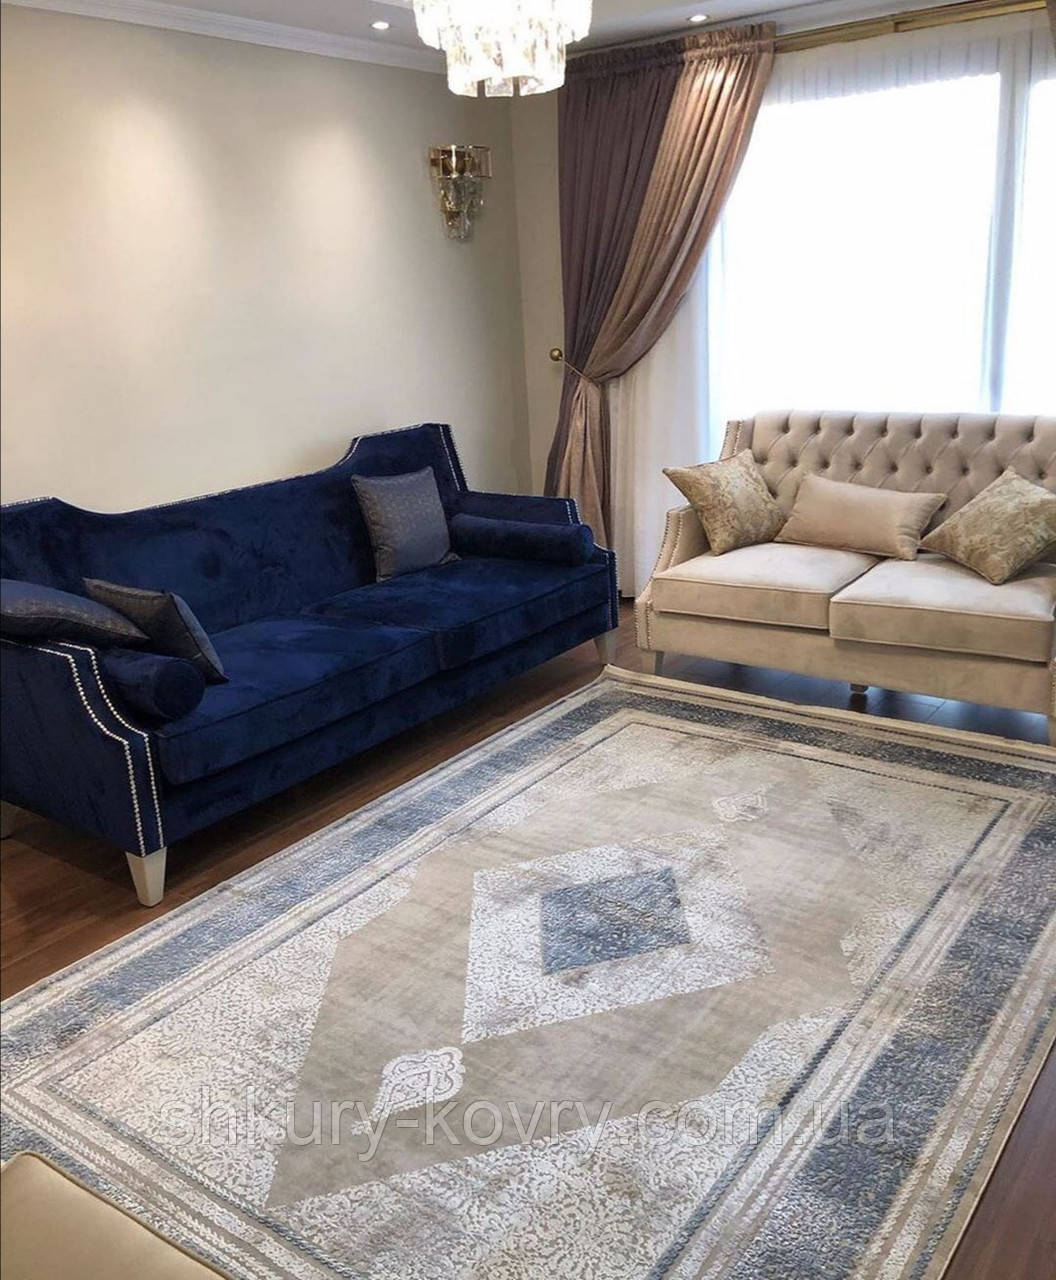 Строгий класичний щільний шовковий килим із синім малюнком і бежевим фоном